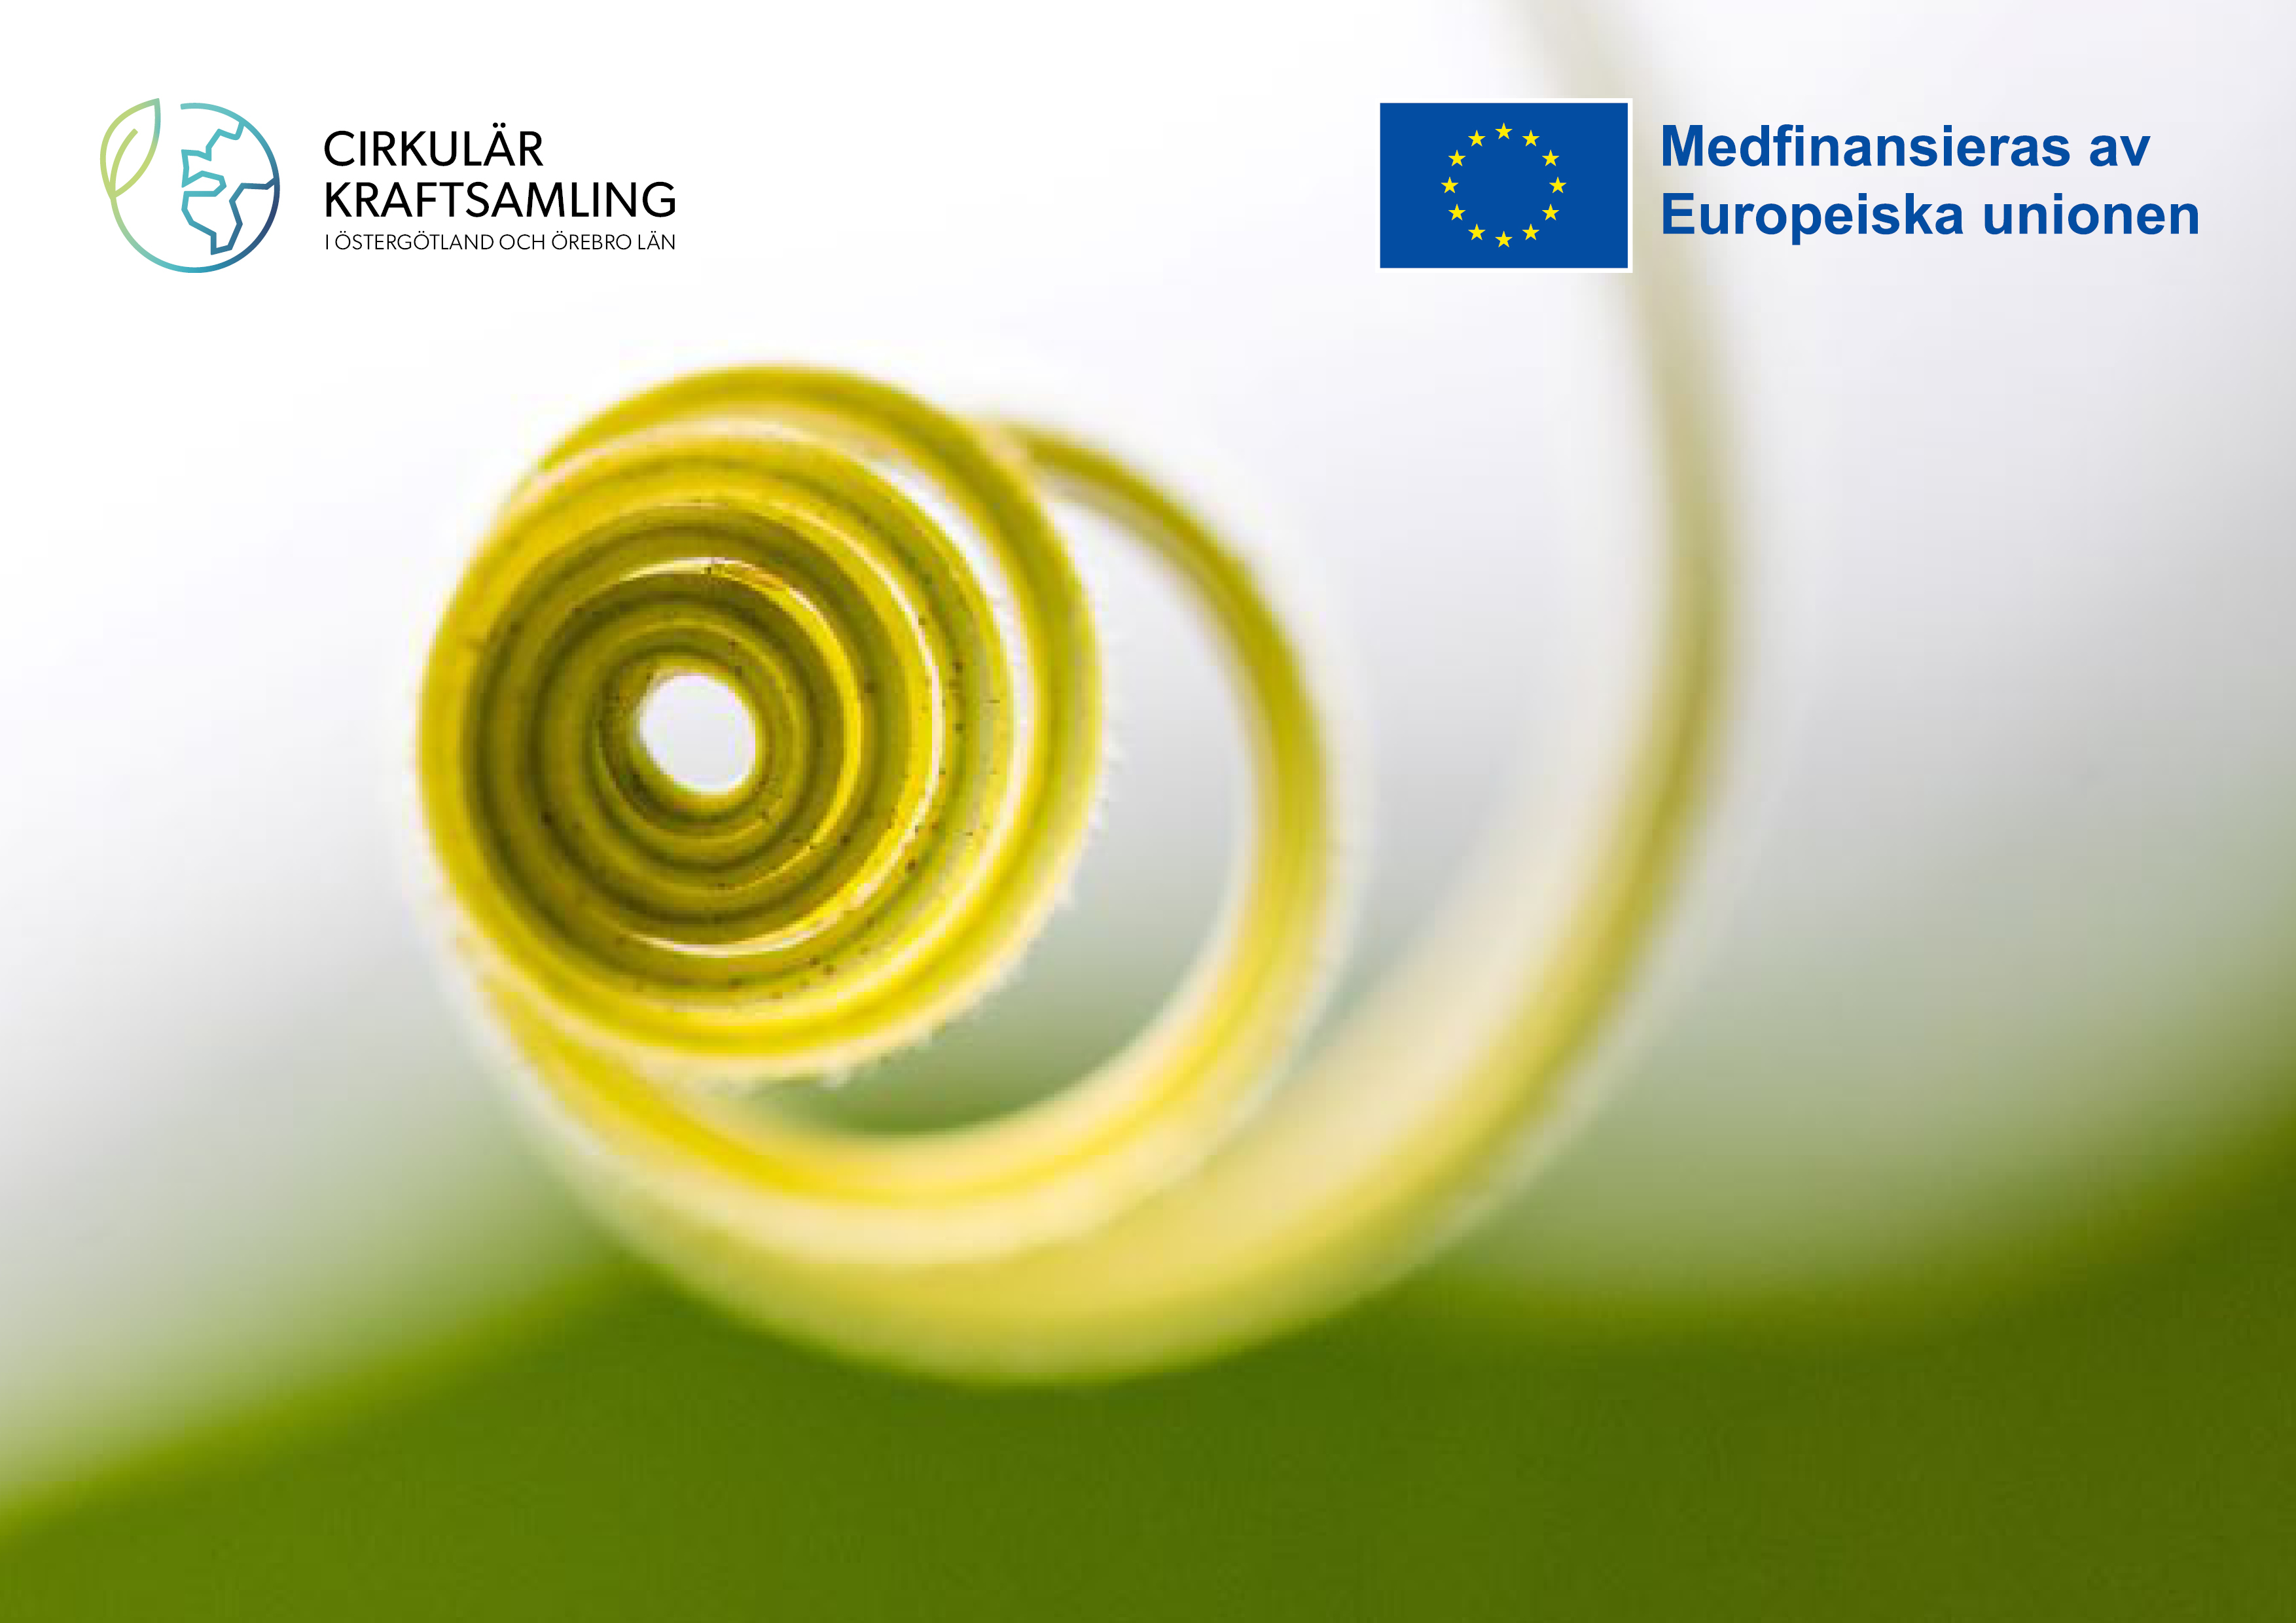 En grön växt i form av en spiral. Logotyp för Cirkulär kraftsamling och EU/Tillväxtverket